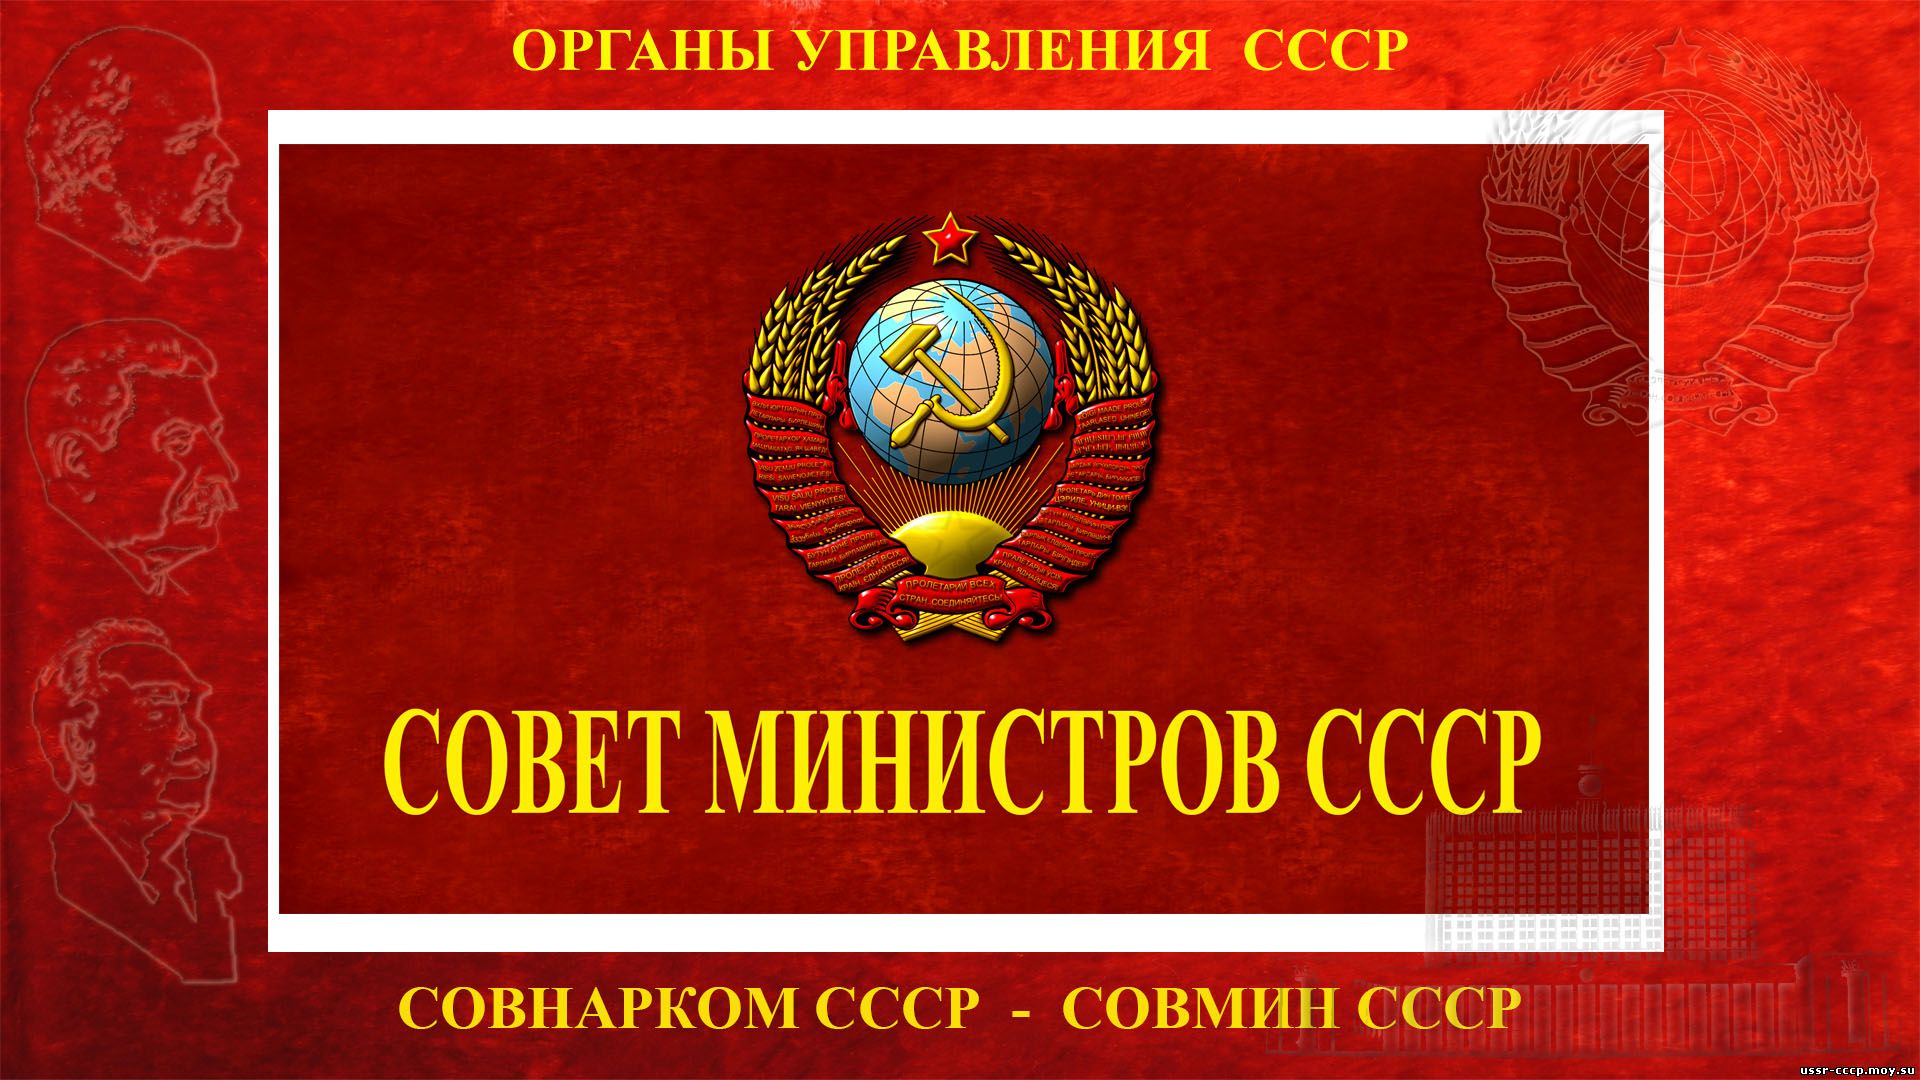 Совет министров СССР (повествование)